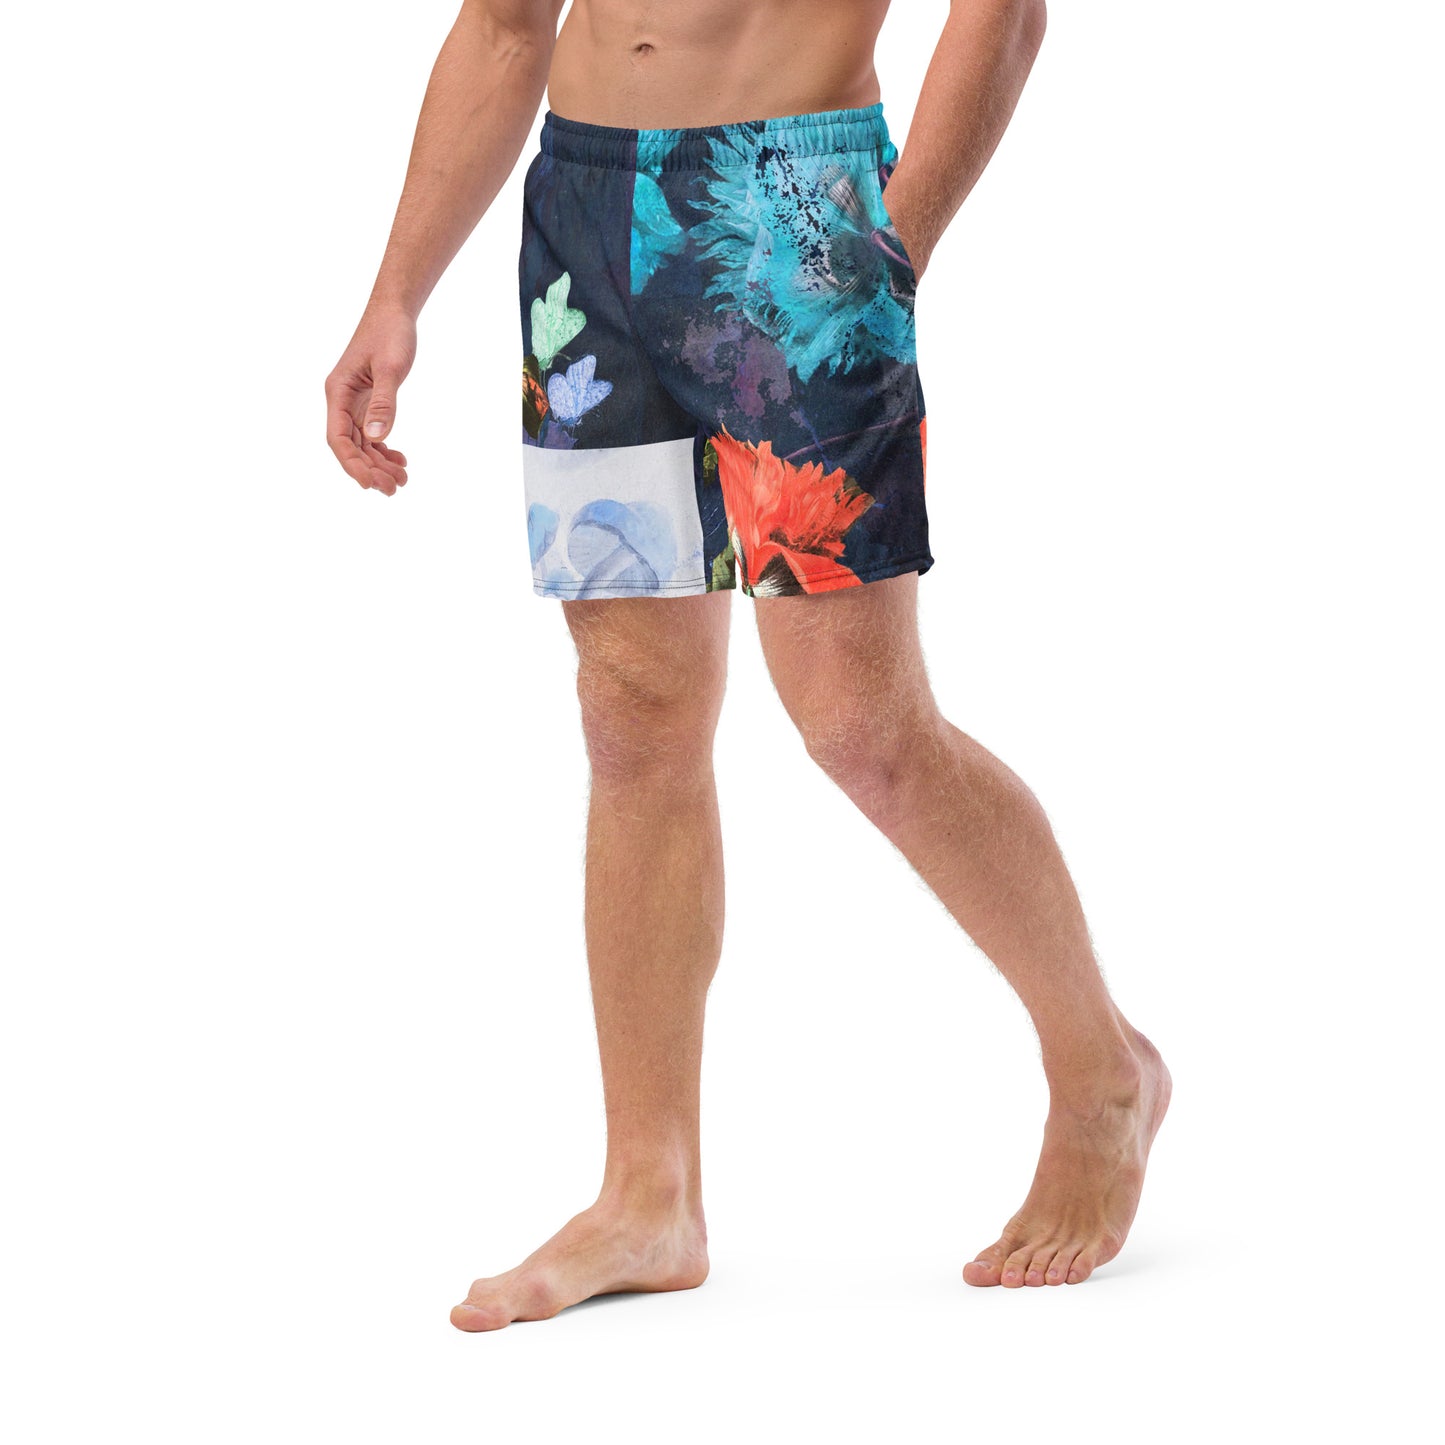 Exquisite Floral Print Men's swim trunks